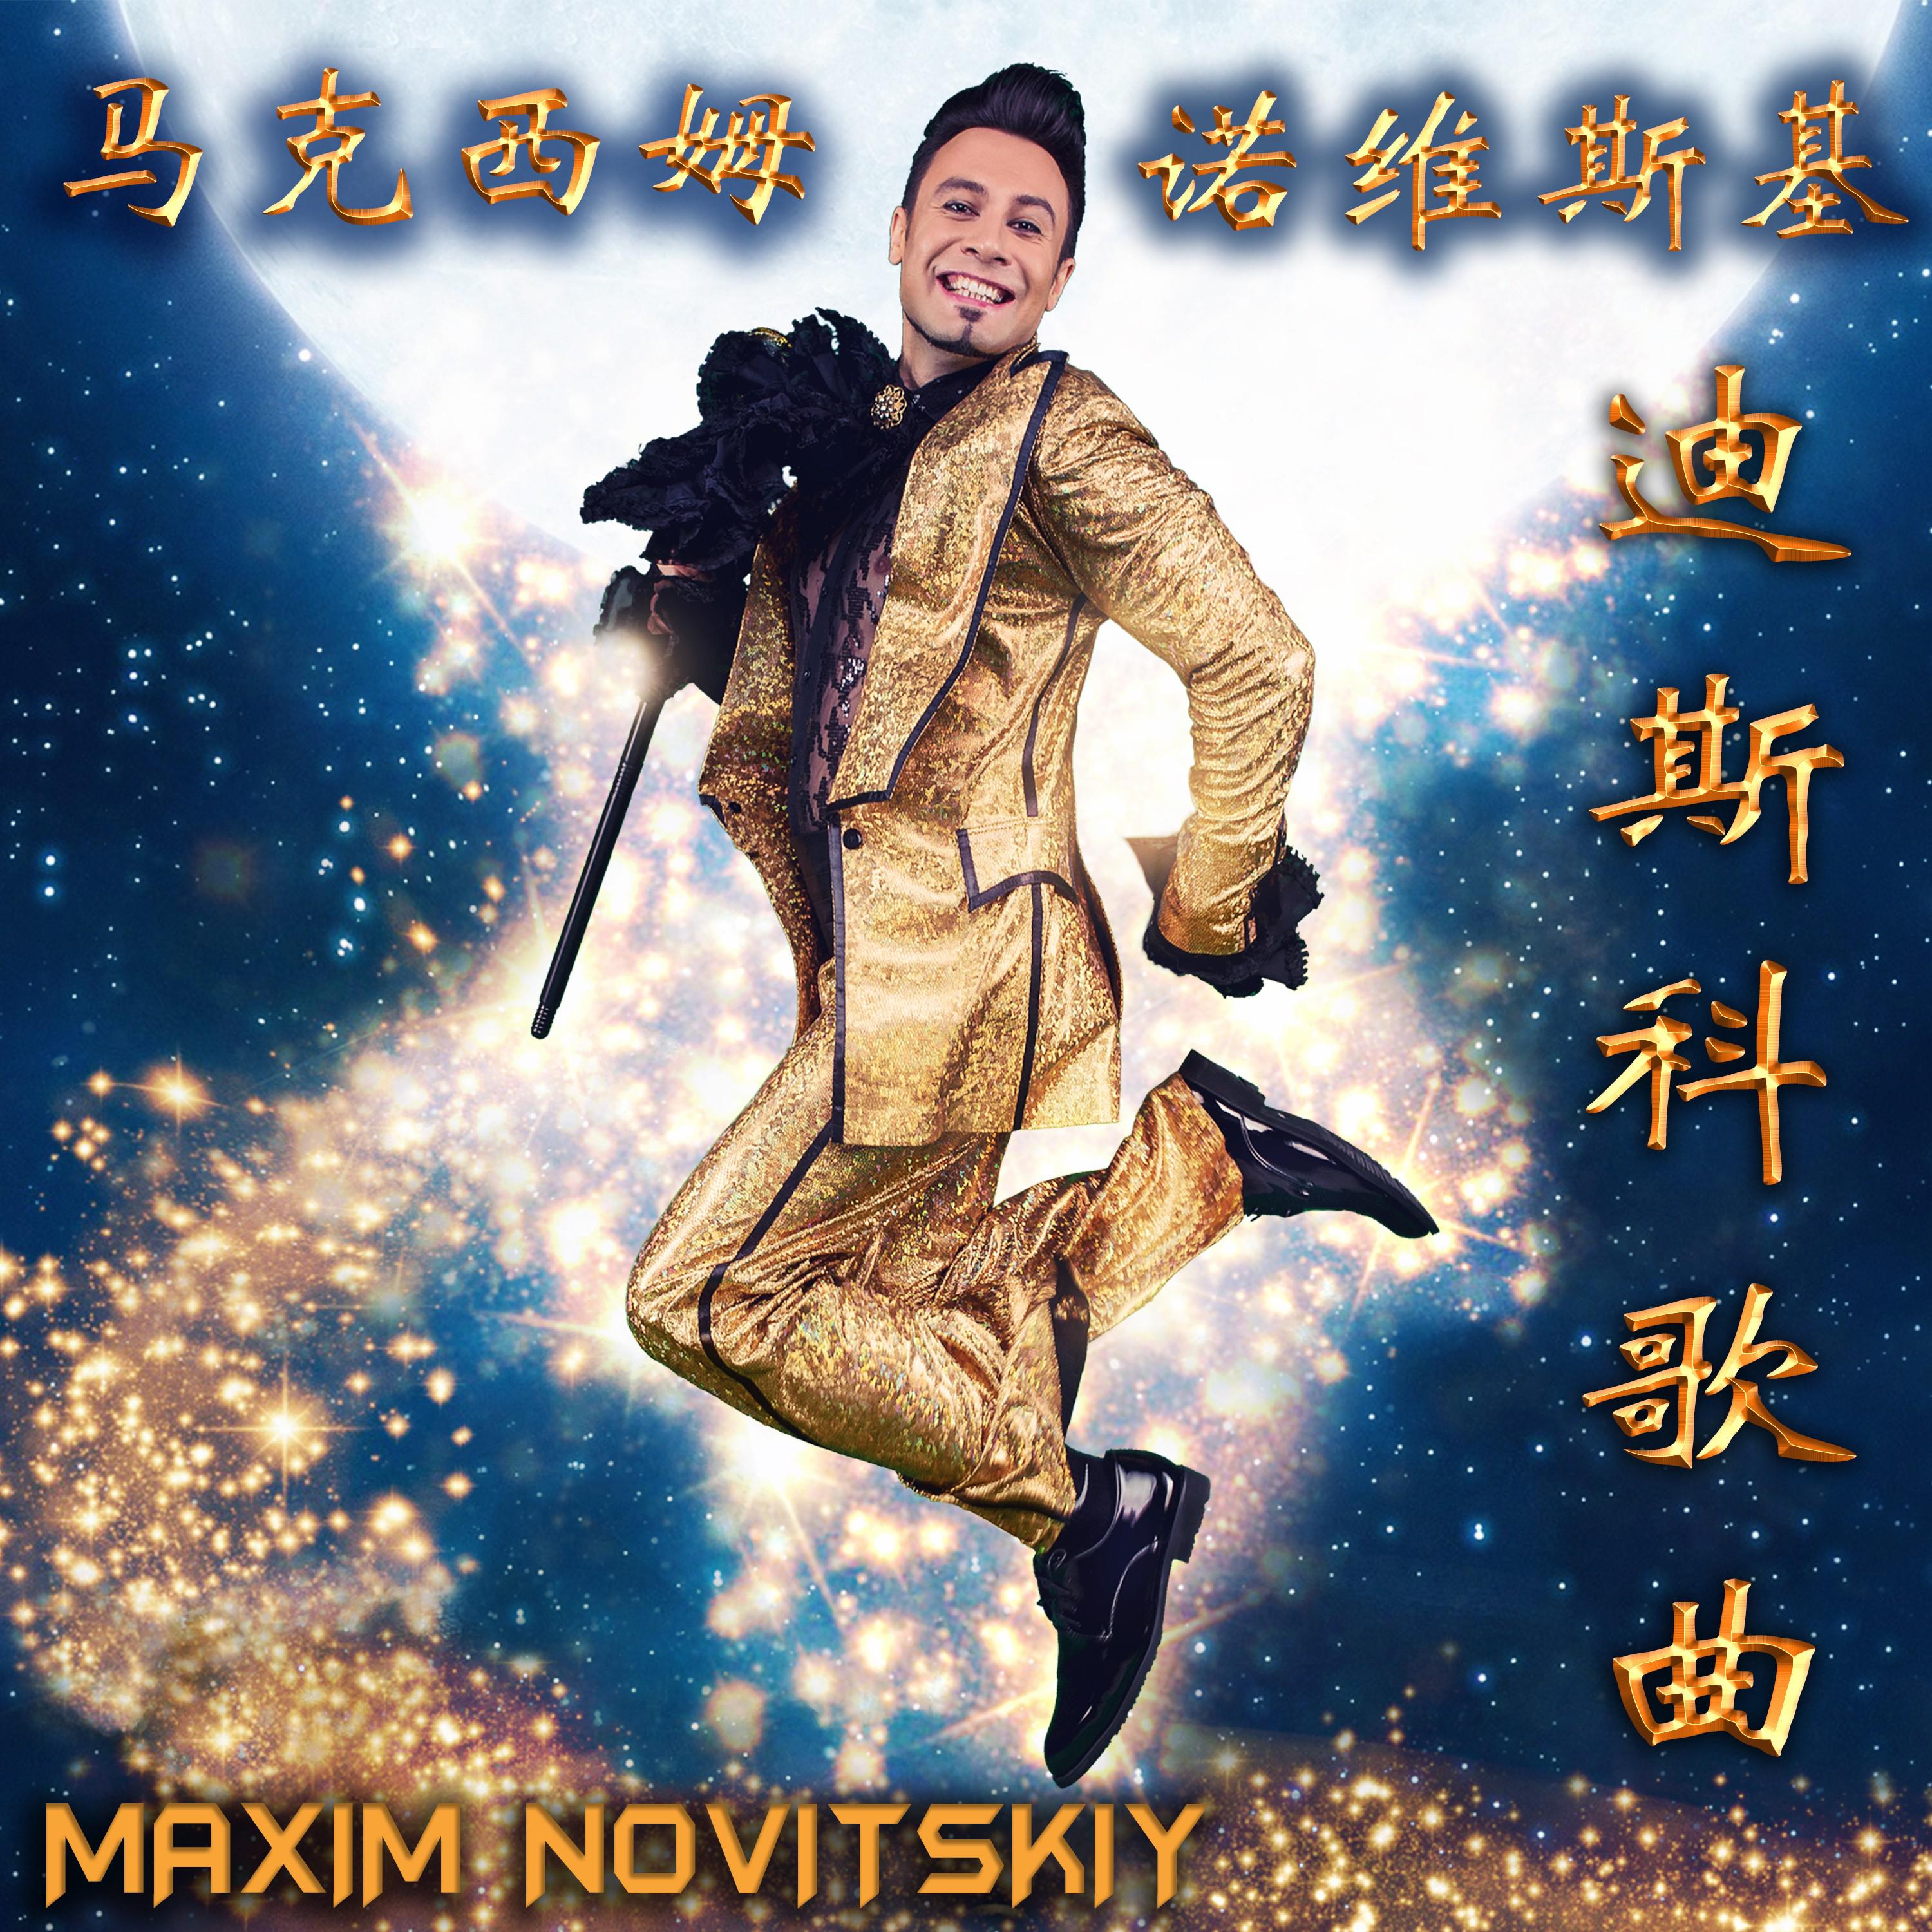 Maxim Novitskiy - 迪斯科歌曲 (Instrumental Version)